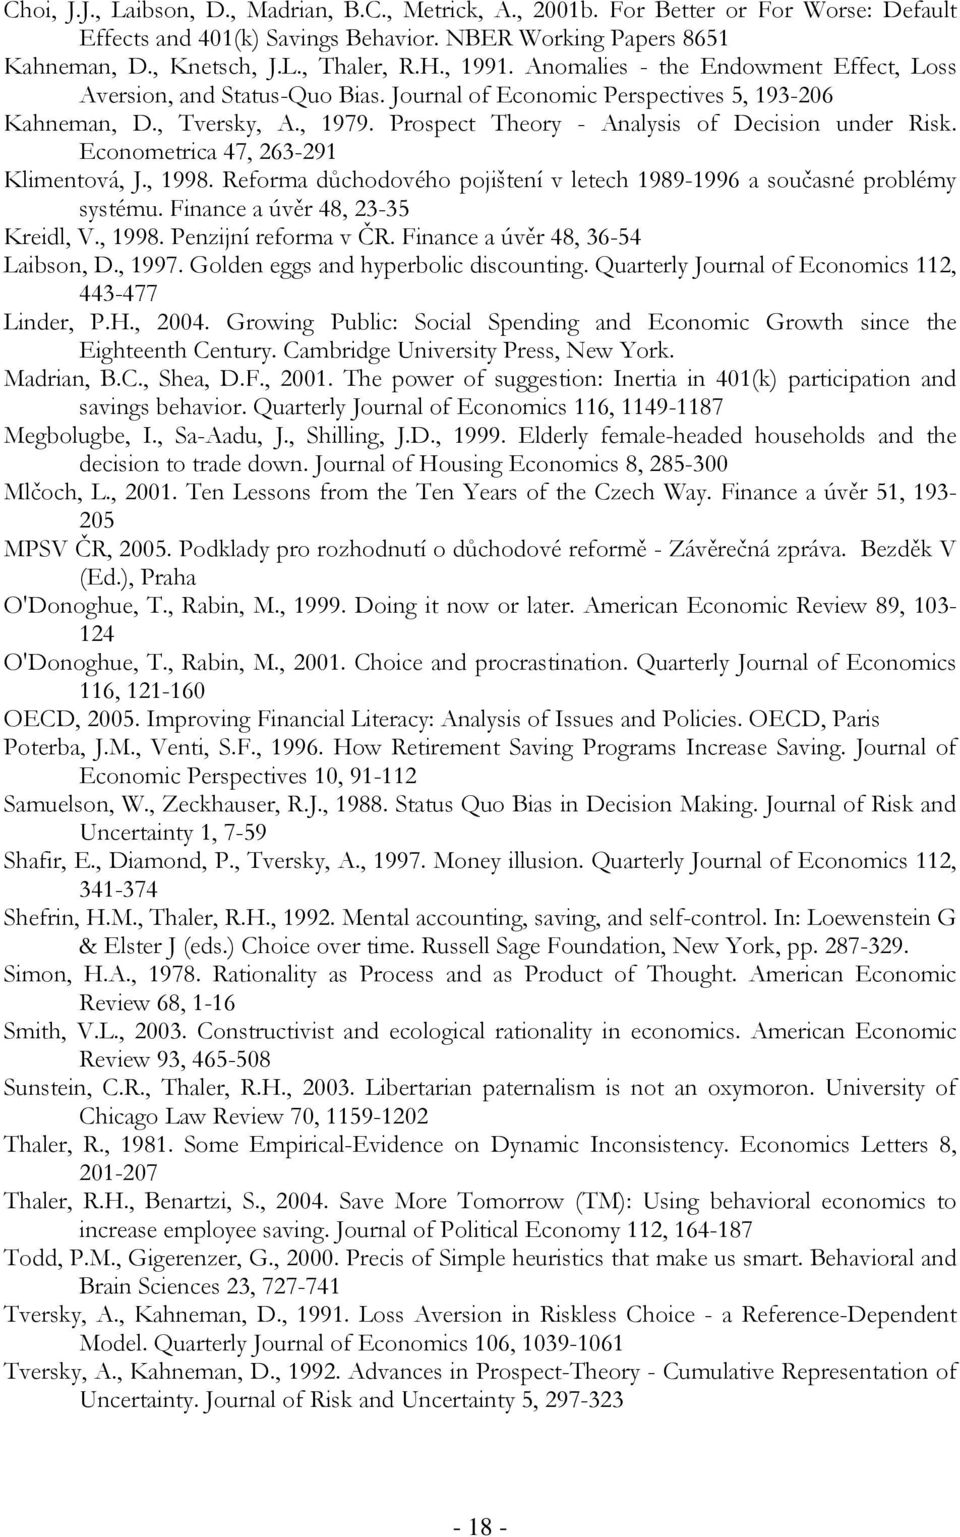 Prospect Theory - Analysis of Decision under Risk. Econometrica 47, 263-291 Klimentová, J., 1998. Reforma důchodového pojištení v letech 1989-1996 a současné problémy systému.